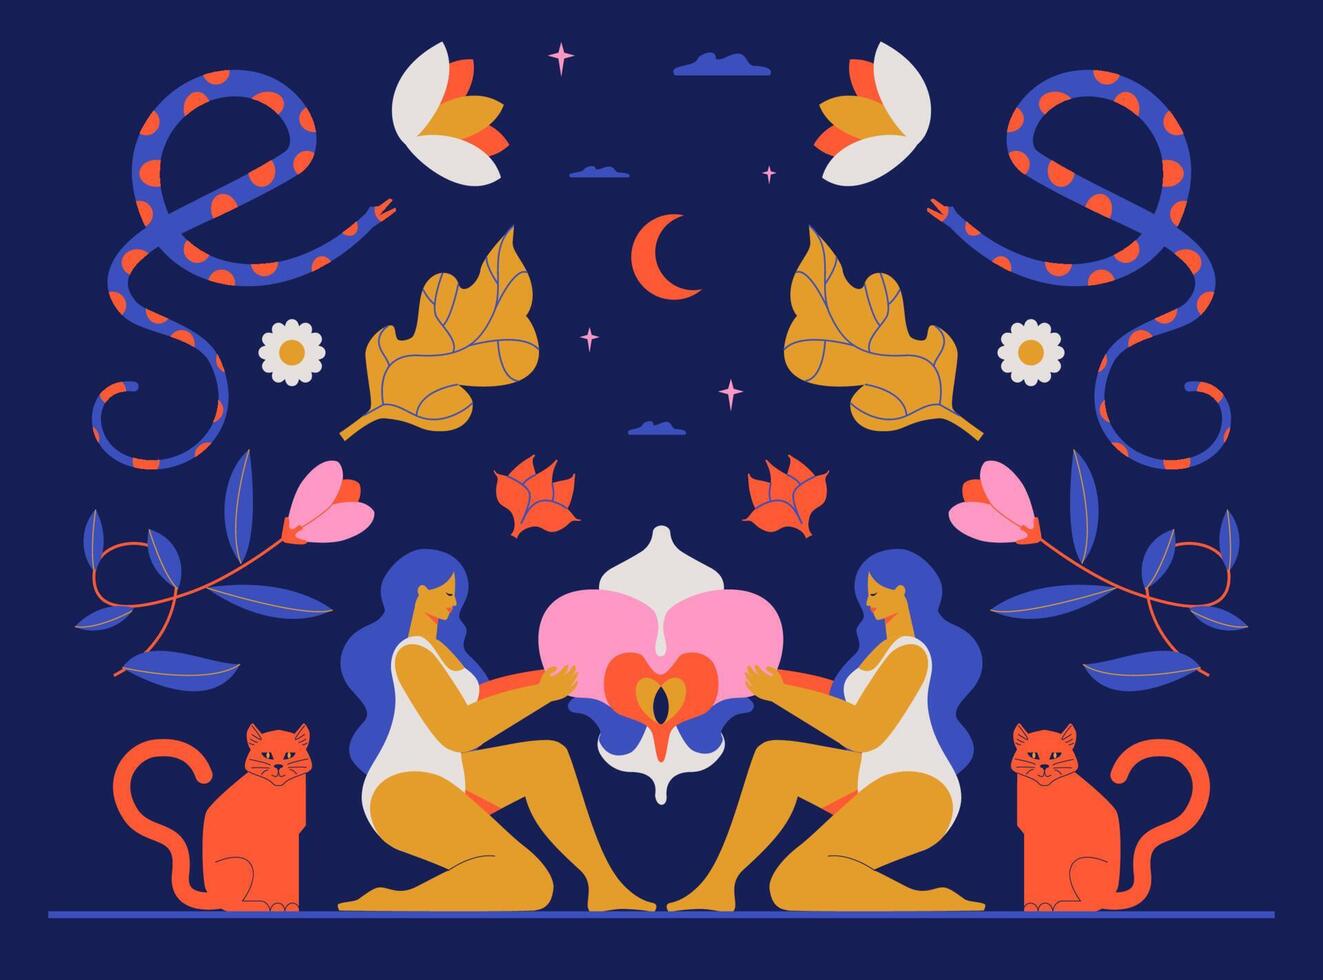 un dessin mystique de l'interaction de deux femmes et d'une orchidée, symbole de la féminité sacrée. illustration boho avec fleurs, sorcières, lune, serpents, chats. vecteur